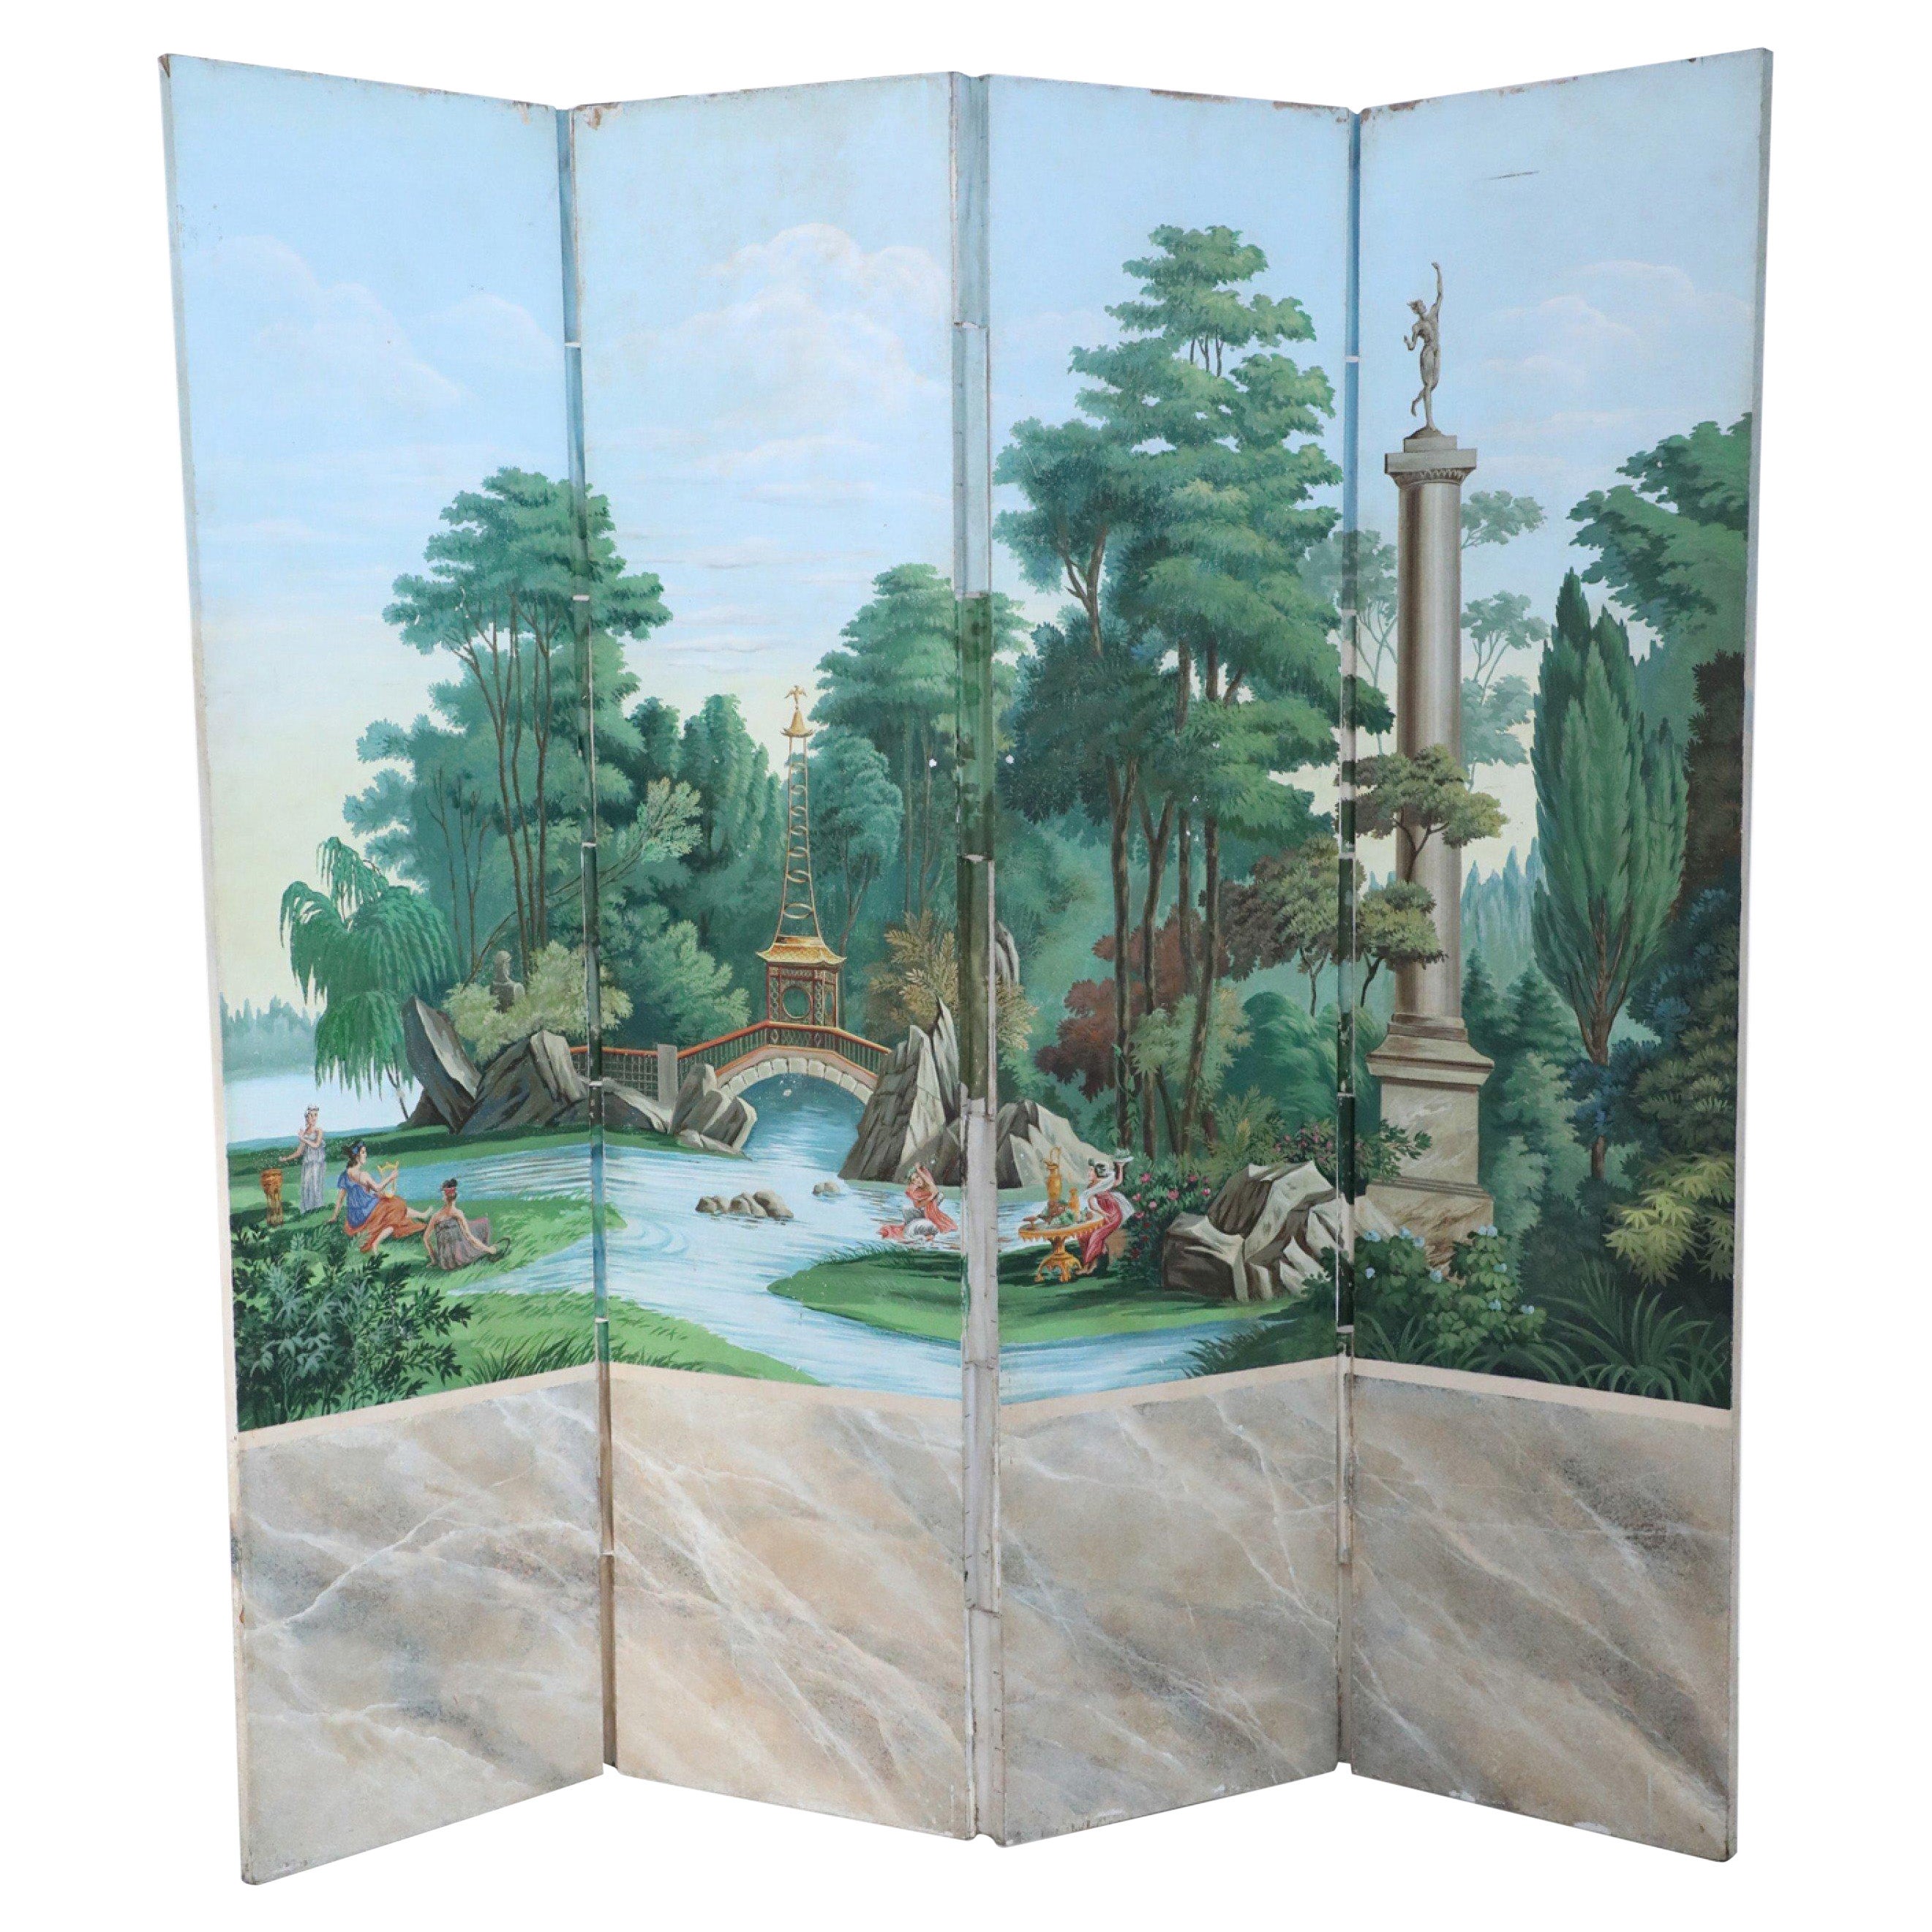 Vintage-Raumteiler im neoklassischen Stil, bemalte Pastoral-Szene, vier Tafeln